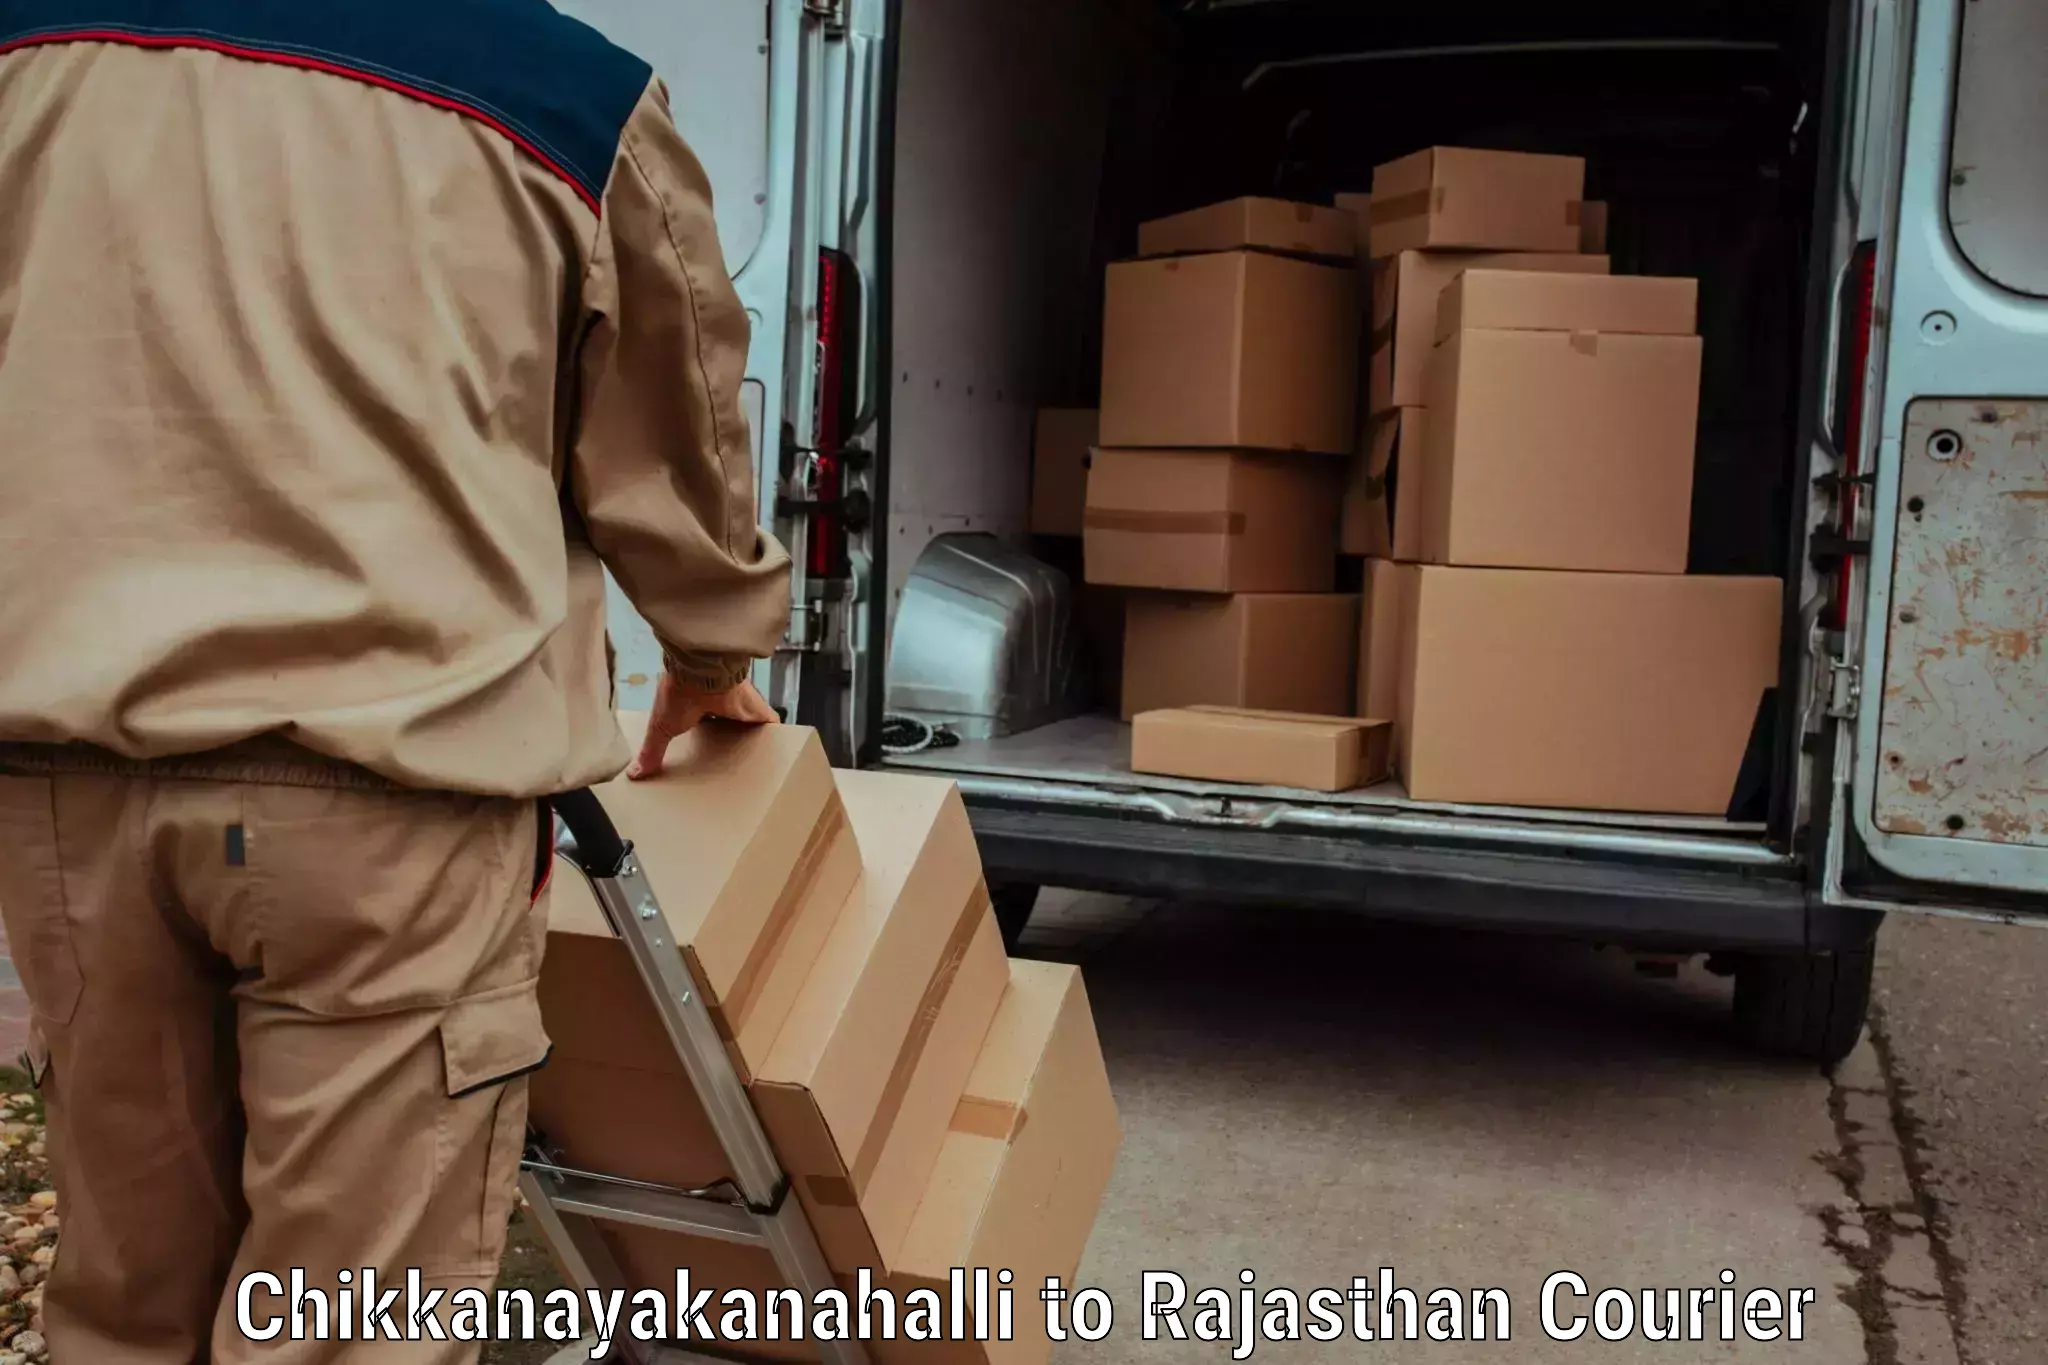 Full-service courier options Chikkanayakanahalli to Keshoraipatan